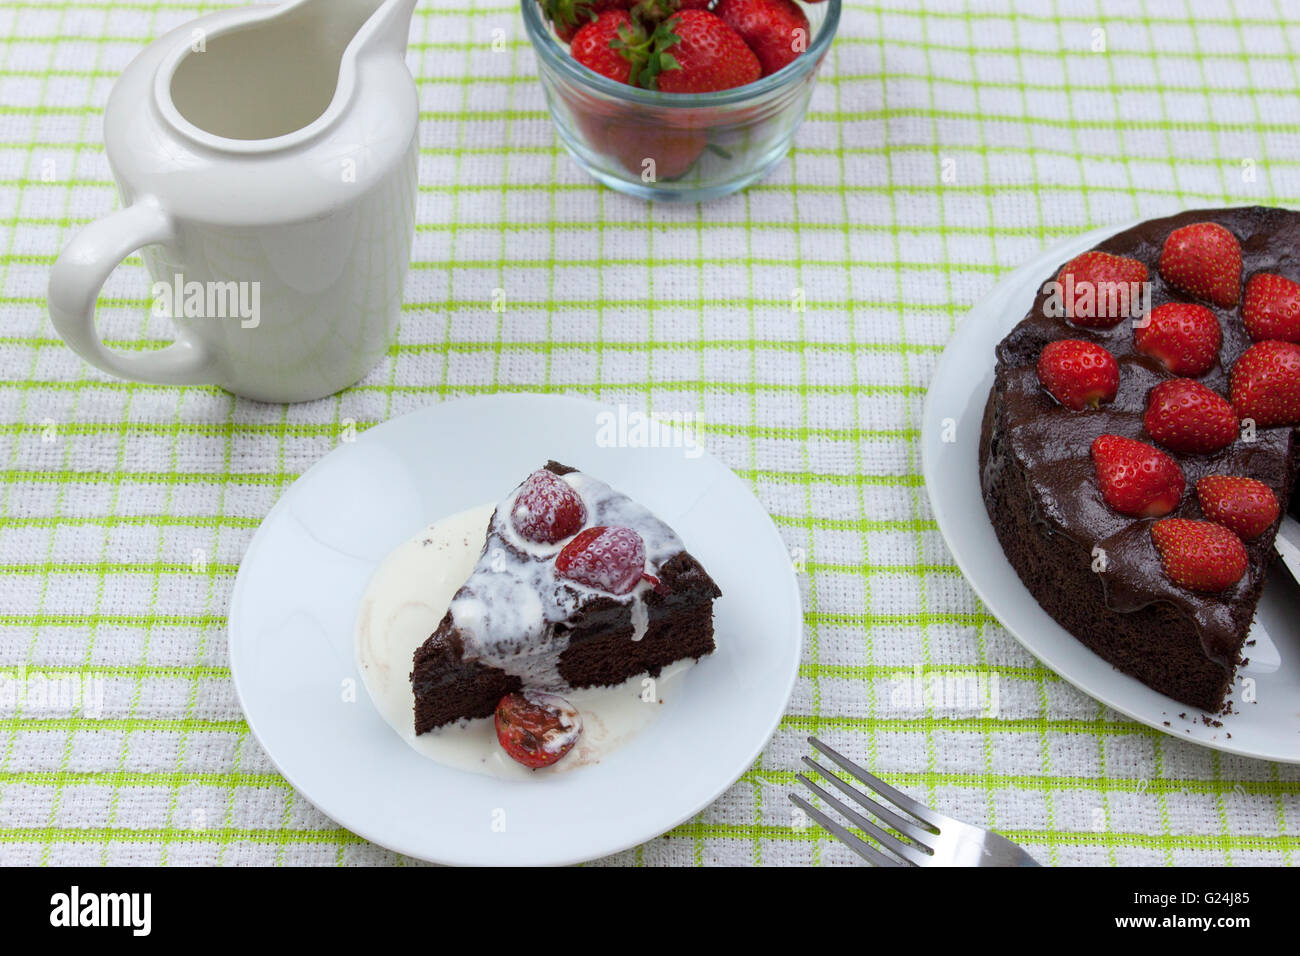 La crème fraîche couverte tranche de gâteau fondant au chocolat garnie de strawberrys sur un tableau par pays Banque D'Images